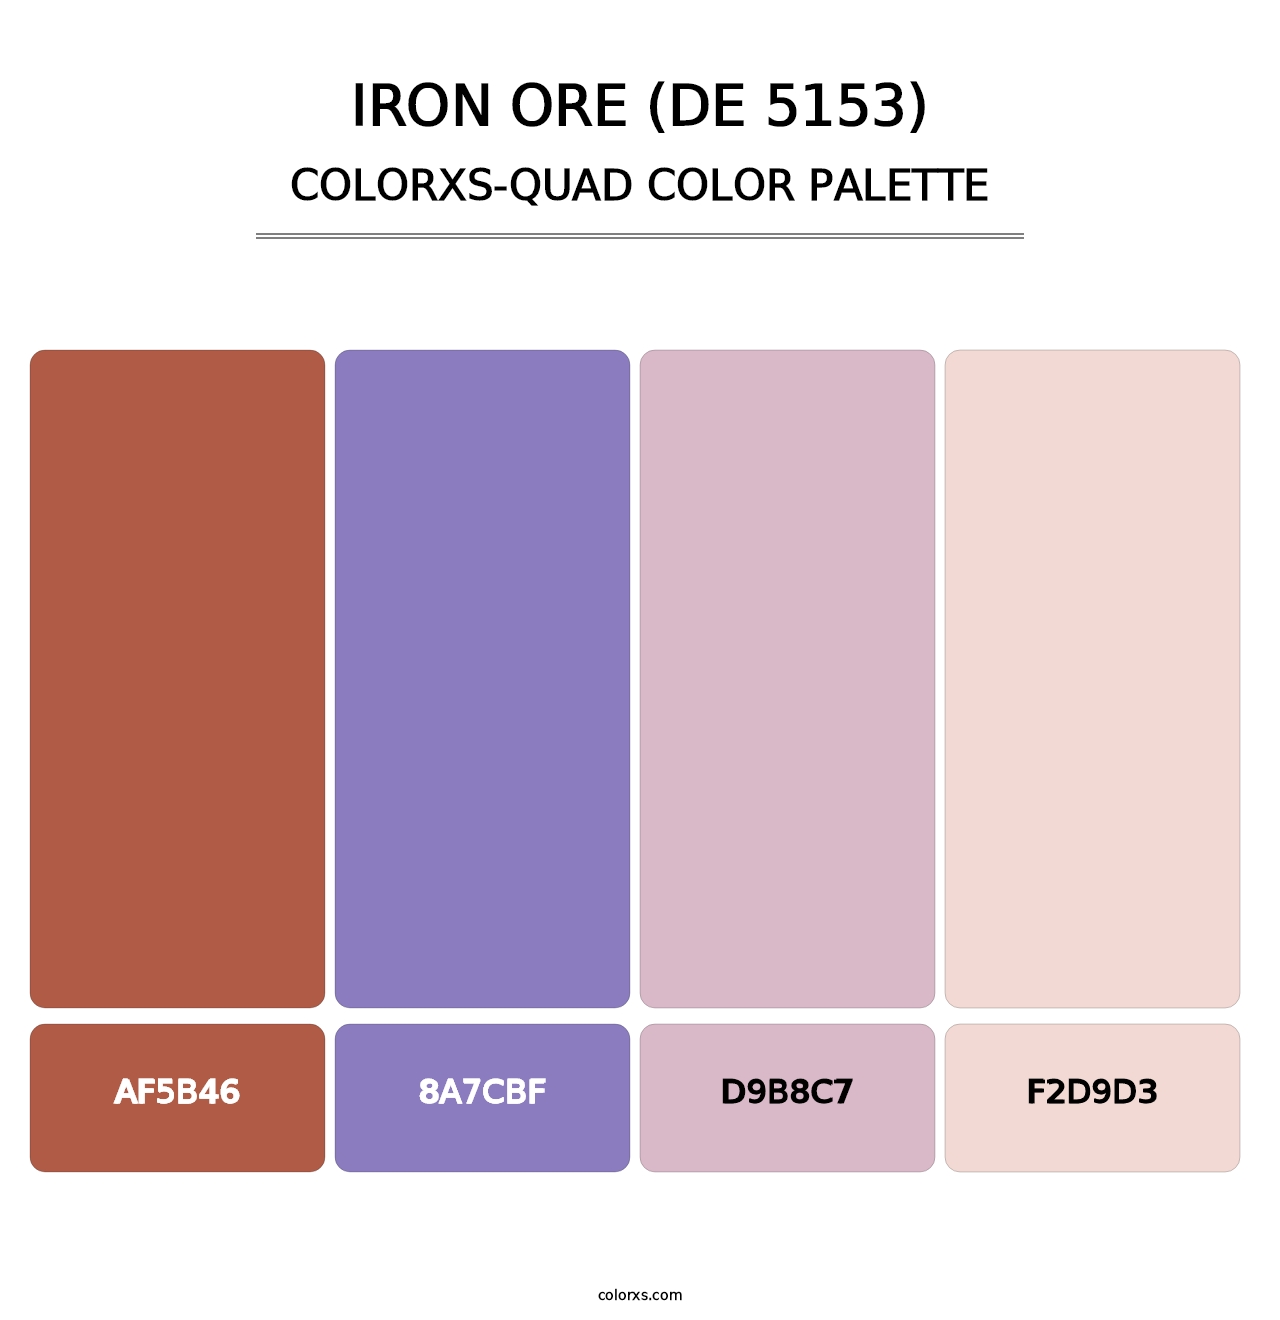 Iron Ore (DE 5153) - Colorxs Quad Palette